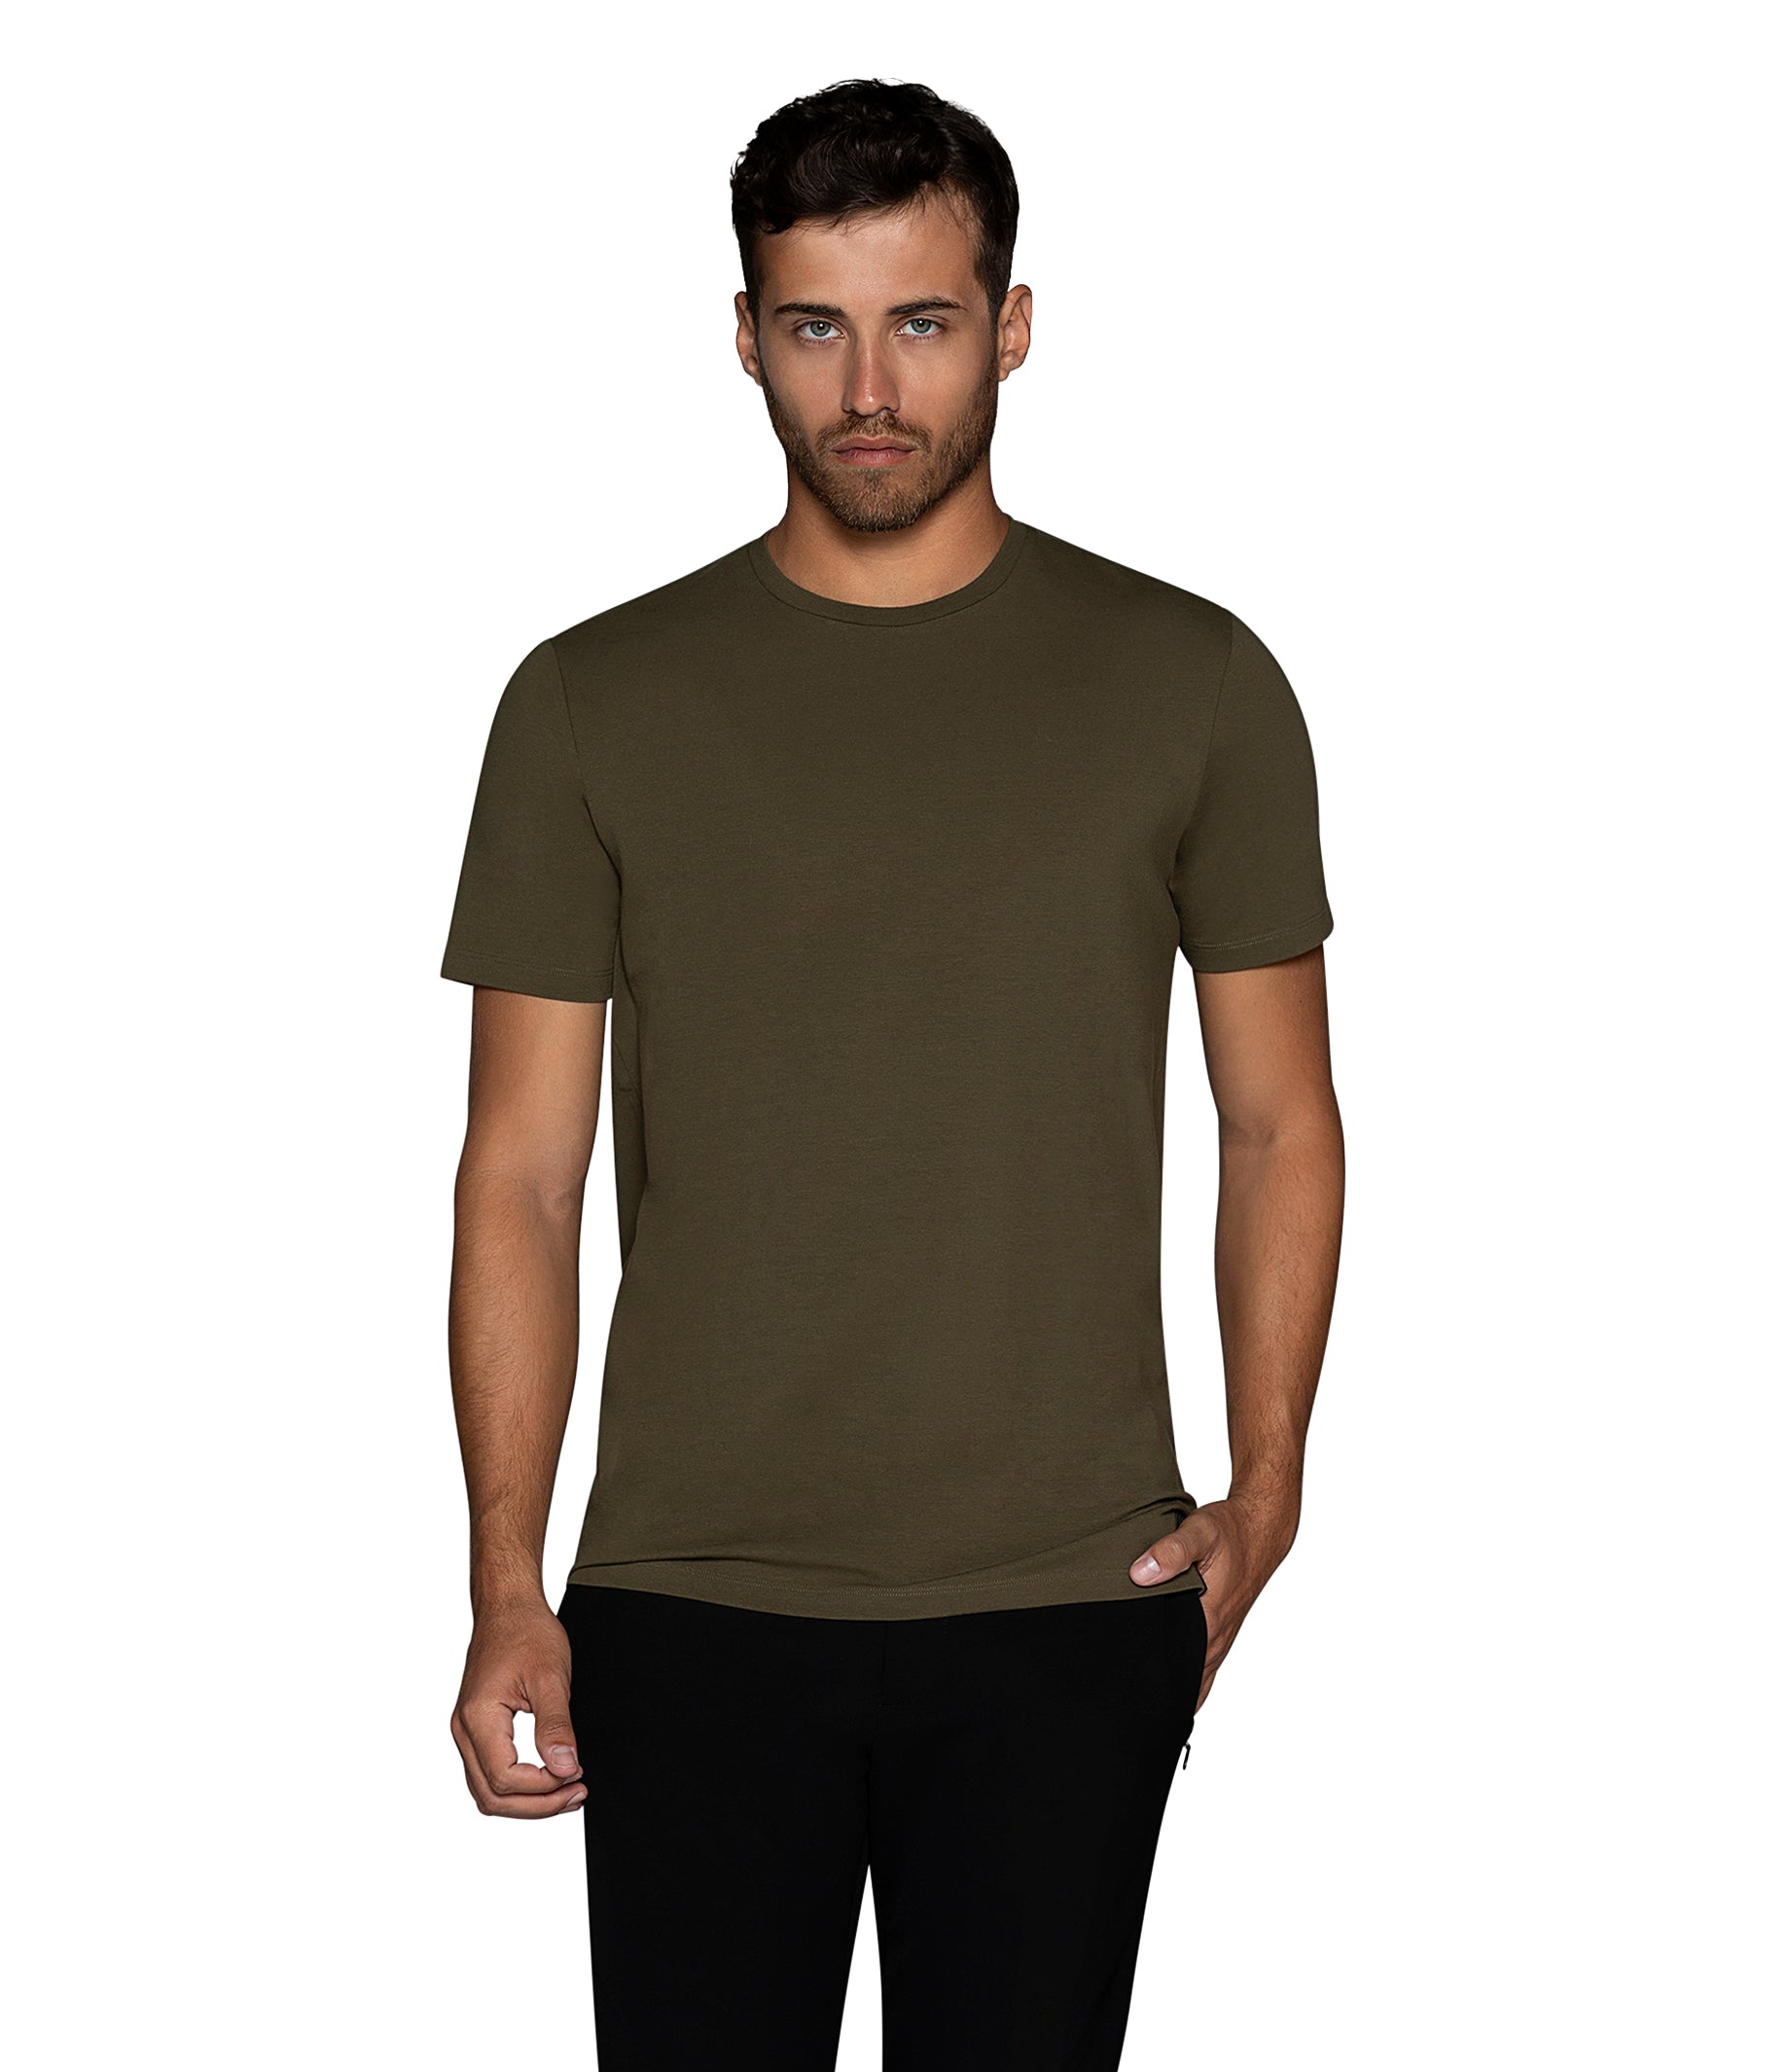 Bertigo Florance Solid Olive T Shirt for Men – Bertigo Shop